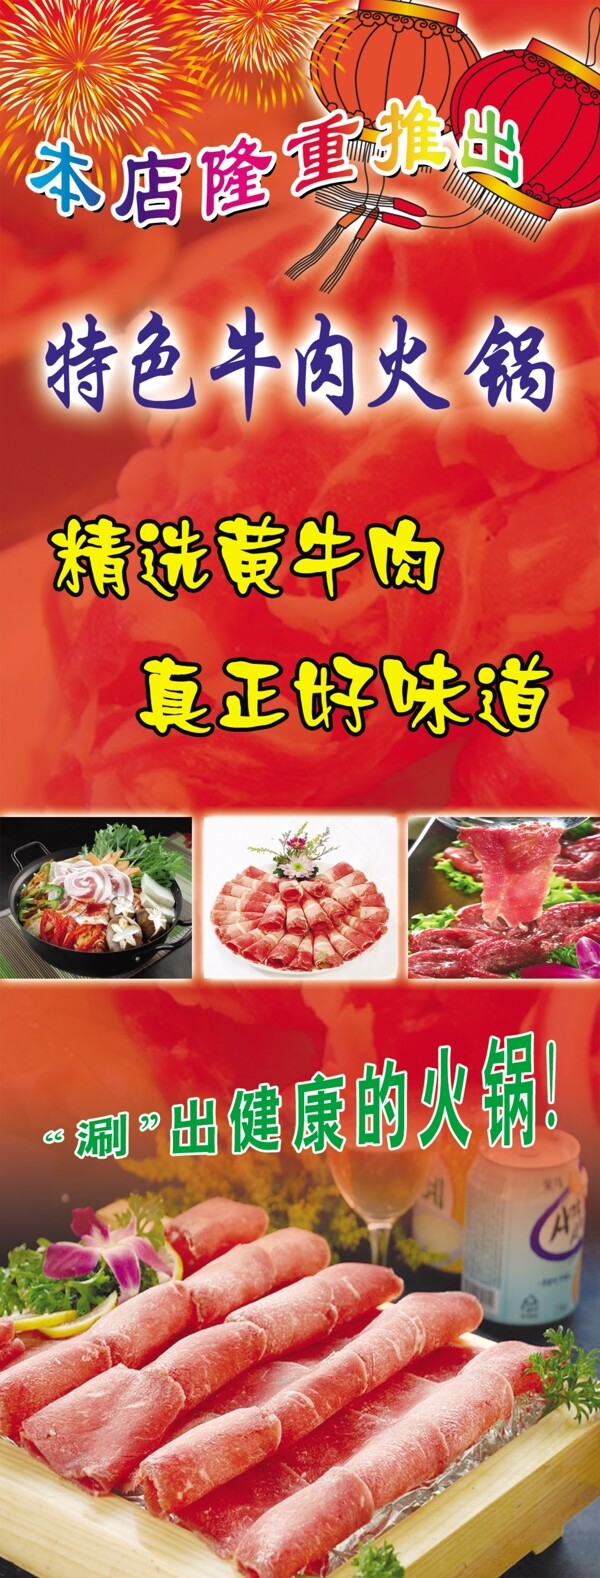 牛肉火锅广告图片